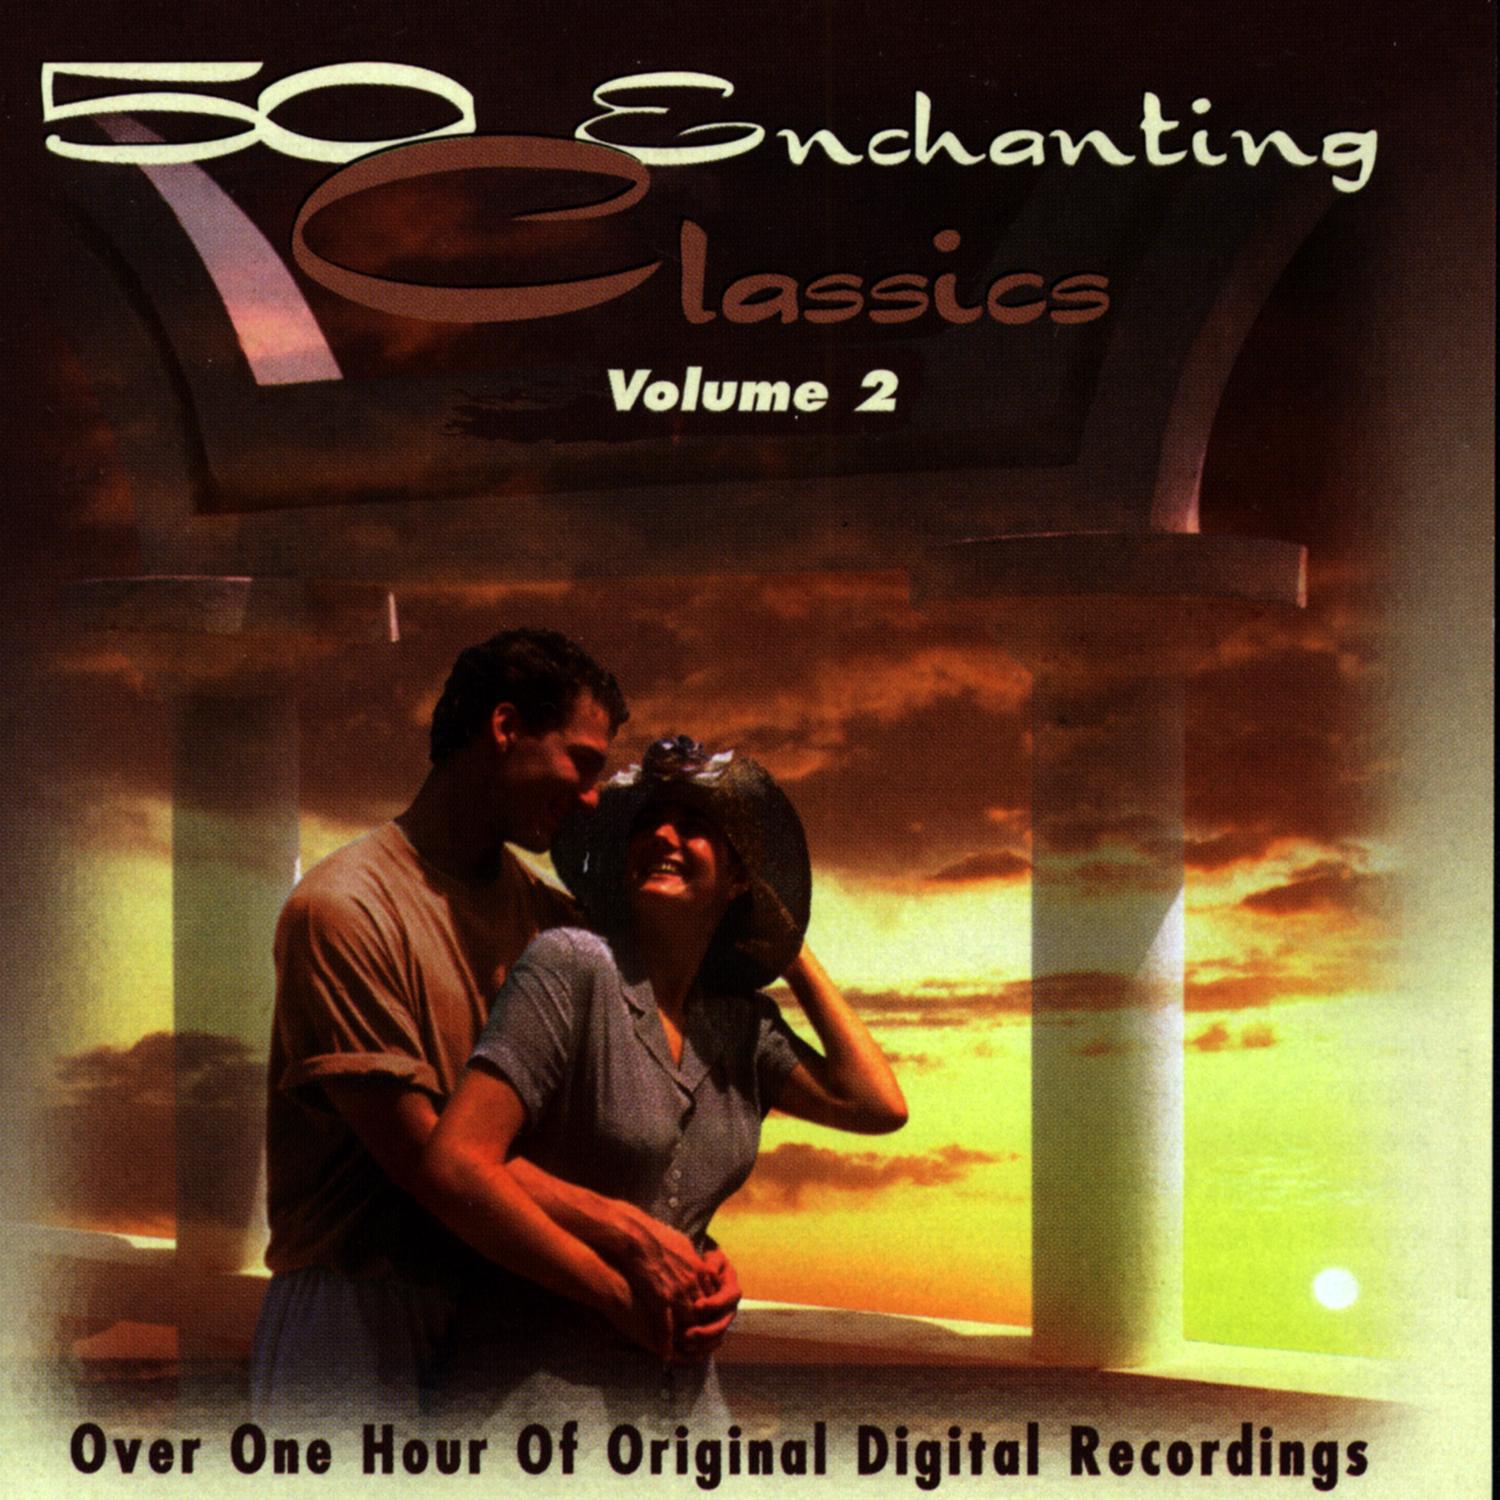 50 Enchanting Classics (Vol. 2)